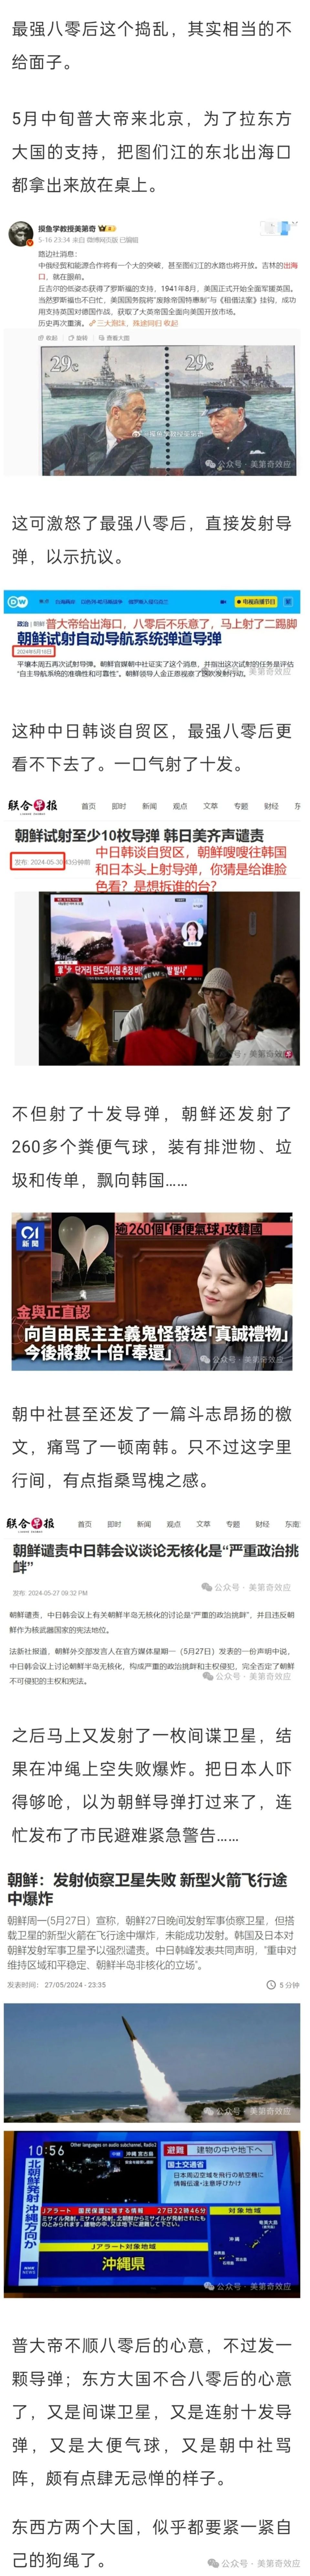 北京新闻主持人西欧图片